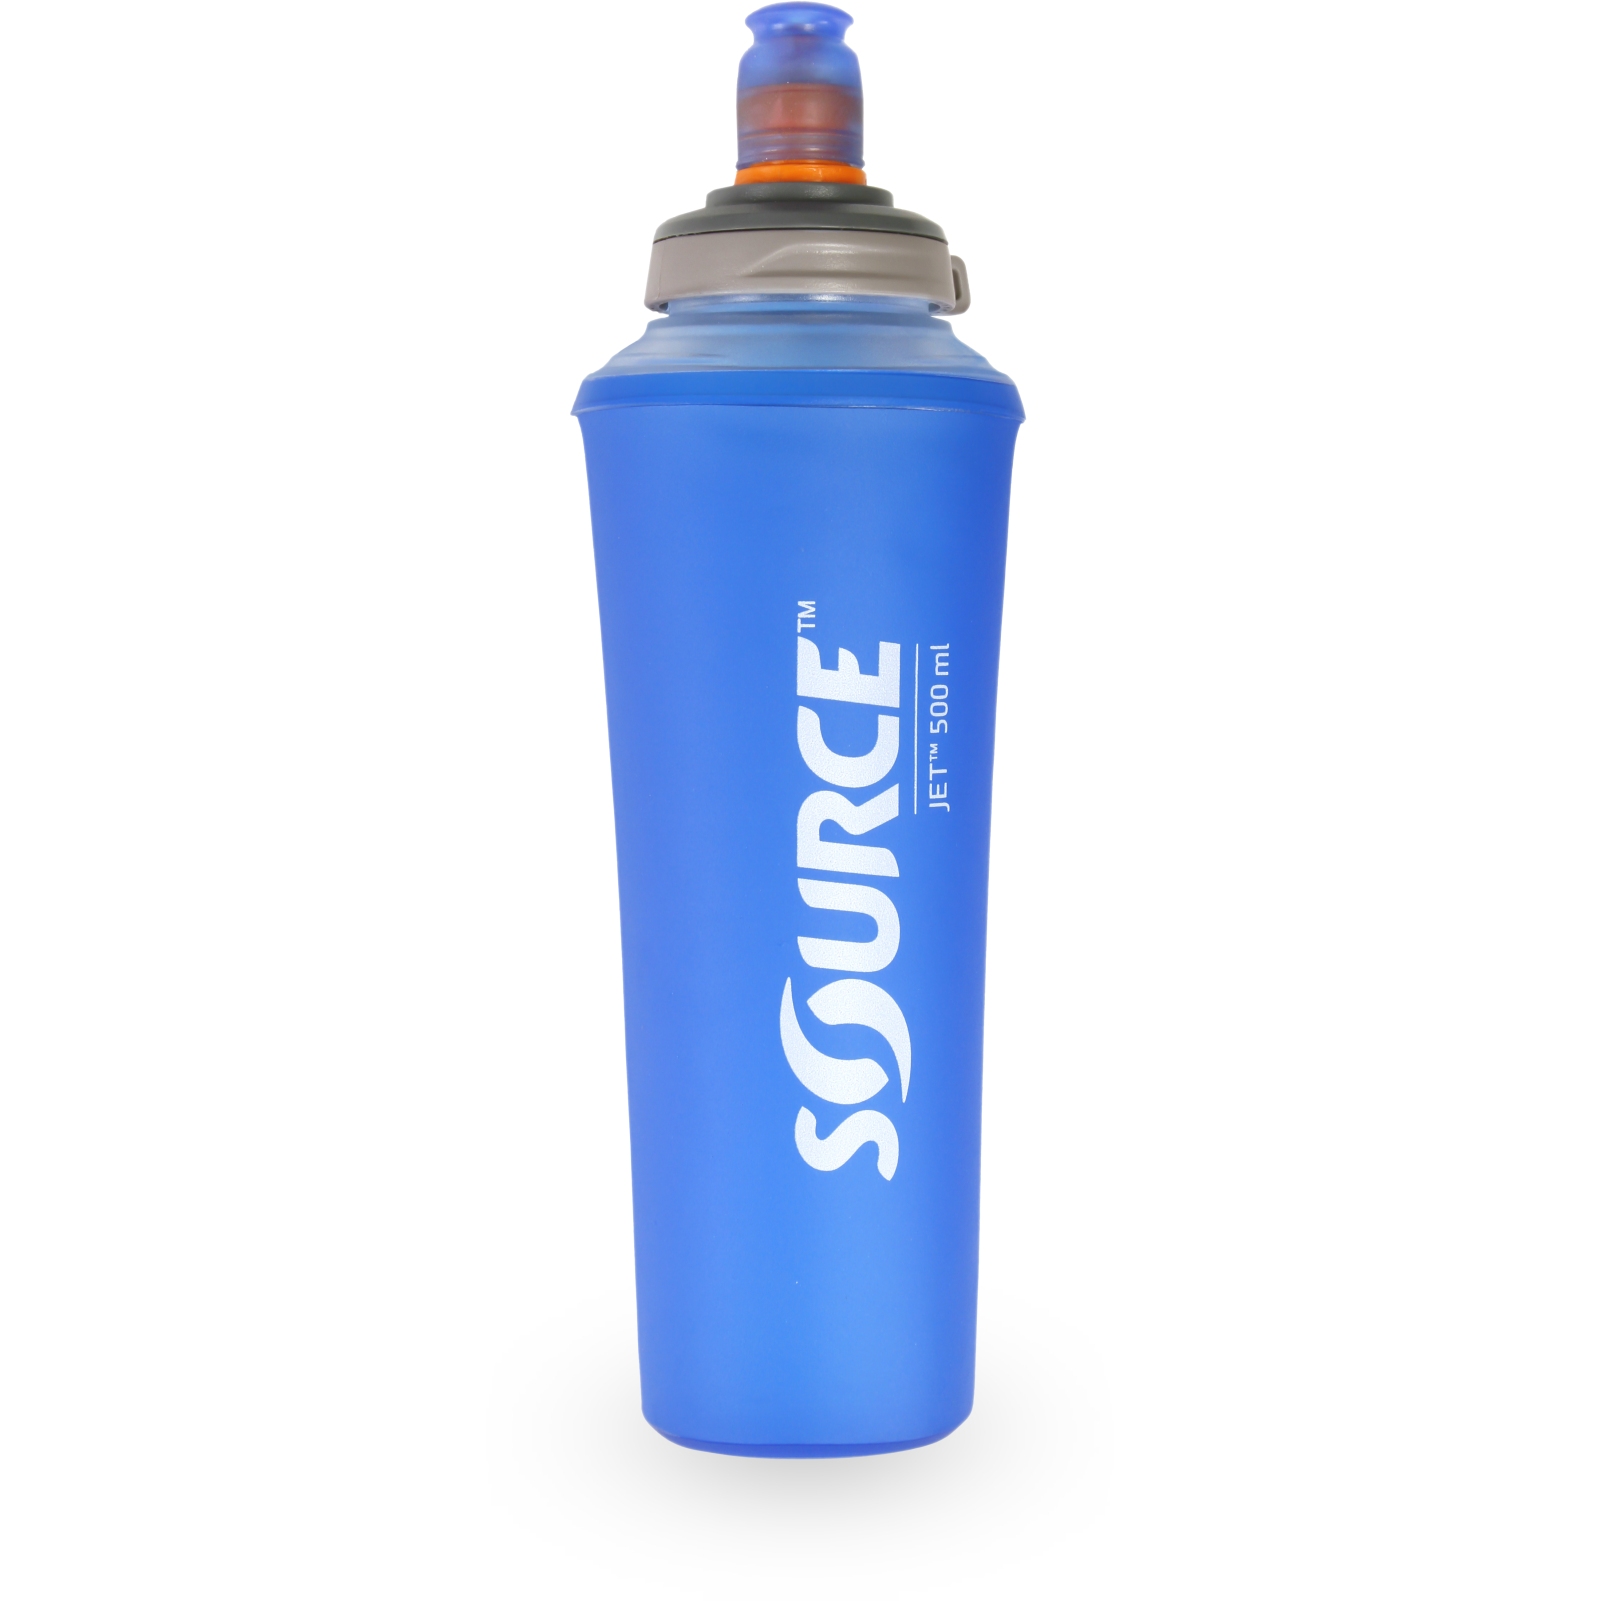 Produktbild von Source Jet Faltbare Wasserflasche - 0.5L